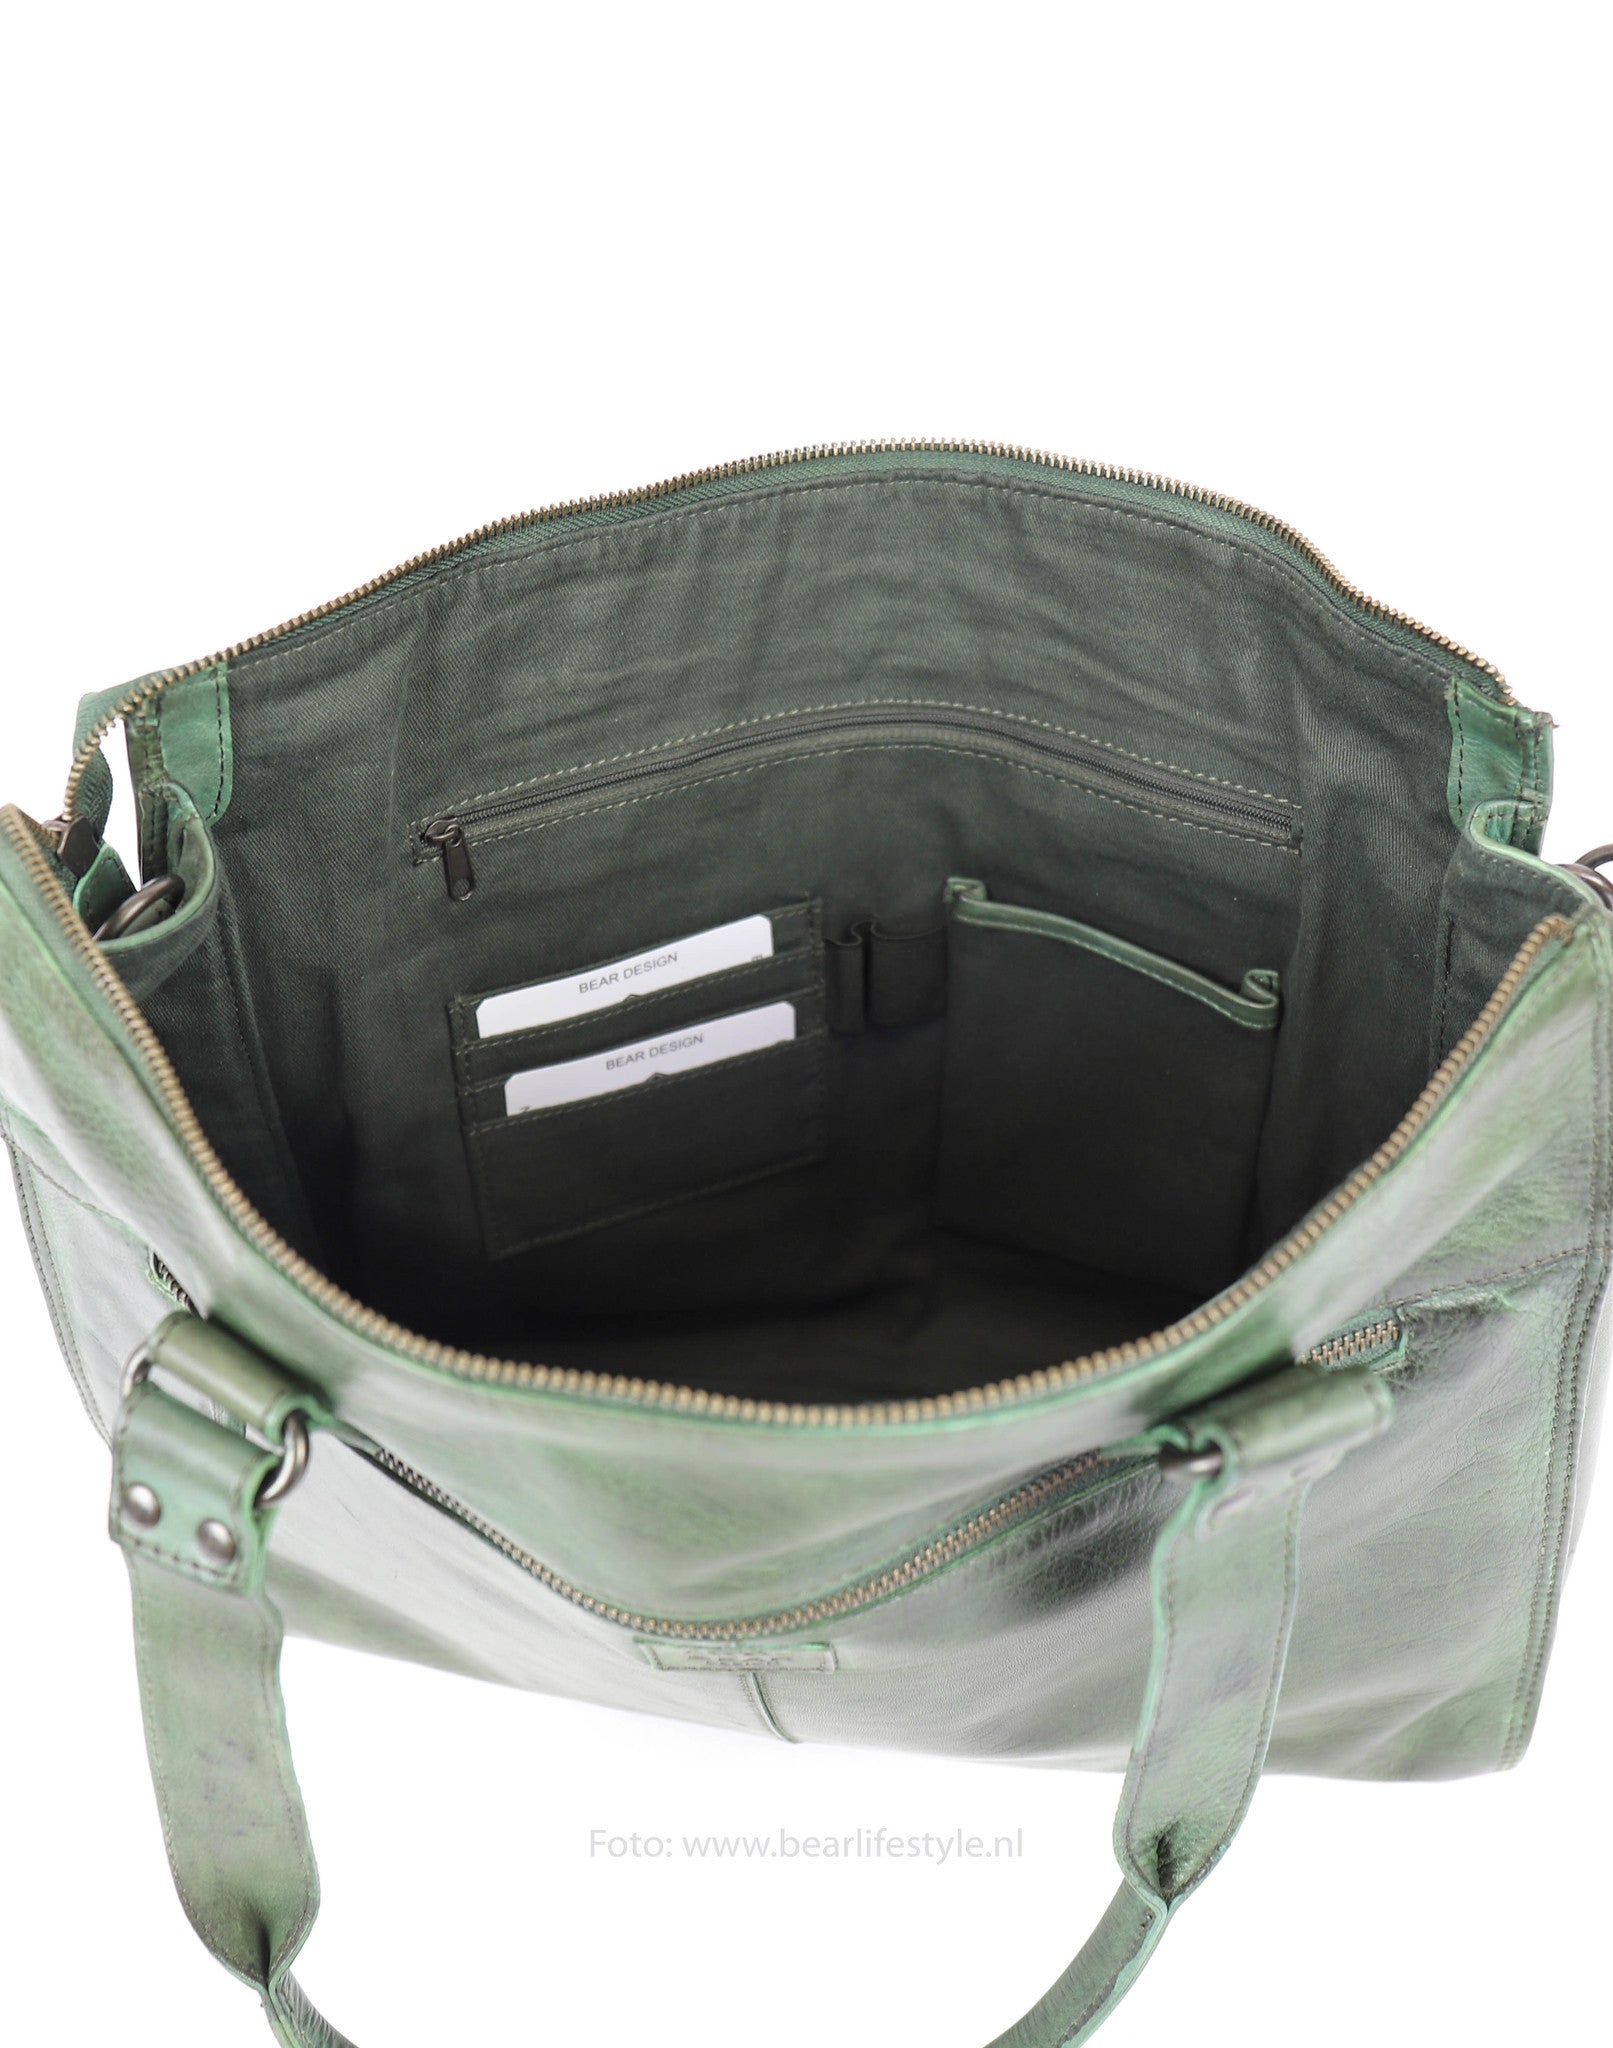 Hand/shoulder bag 'Mea' green - CL 35221